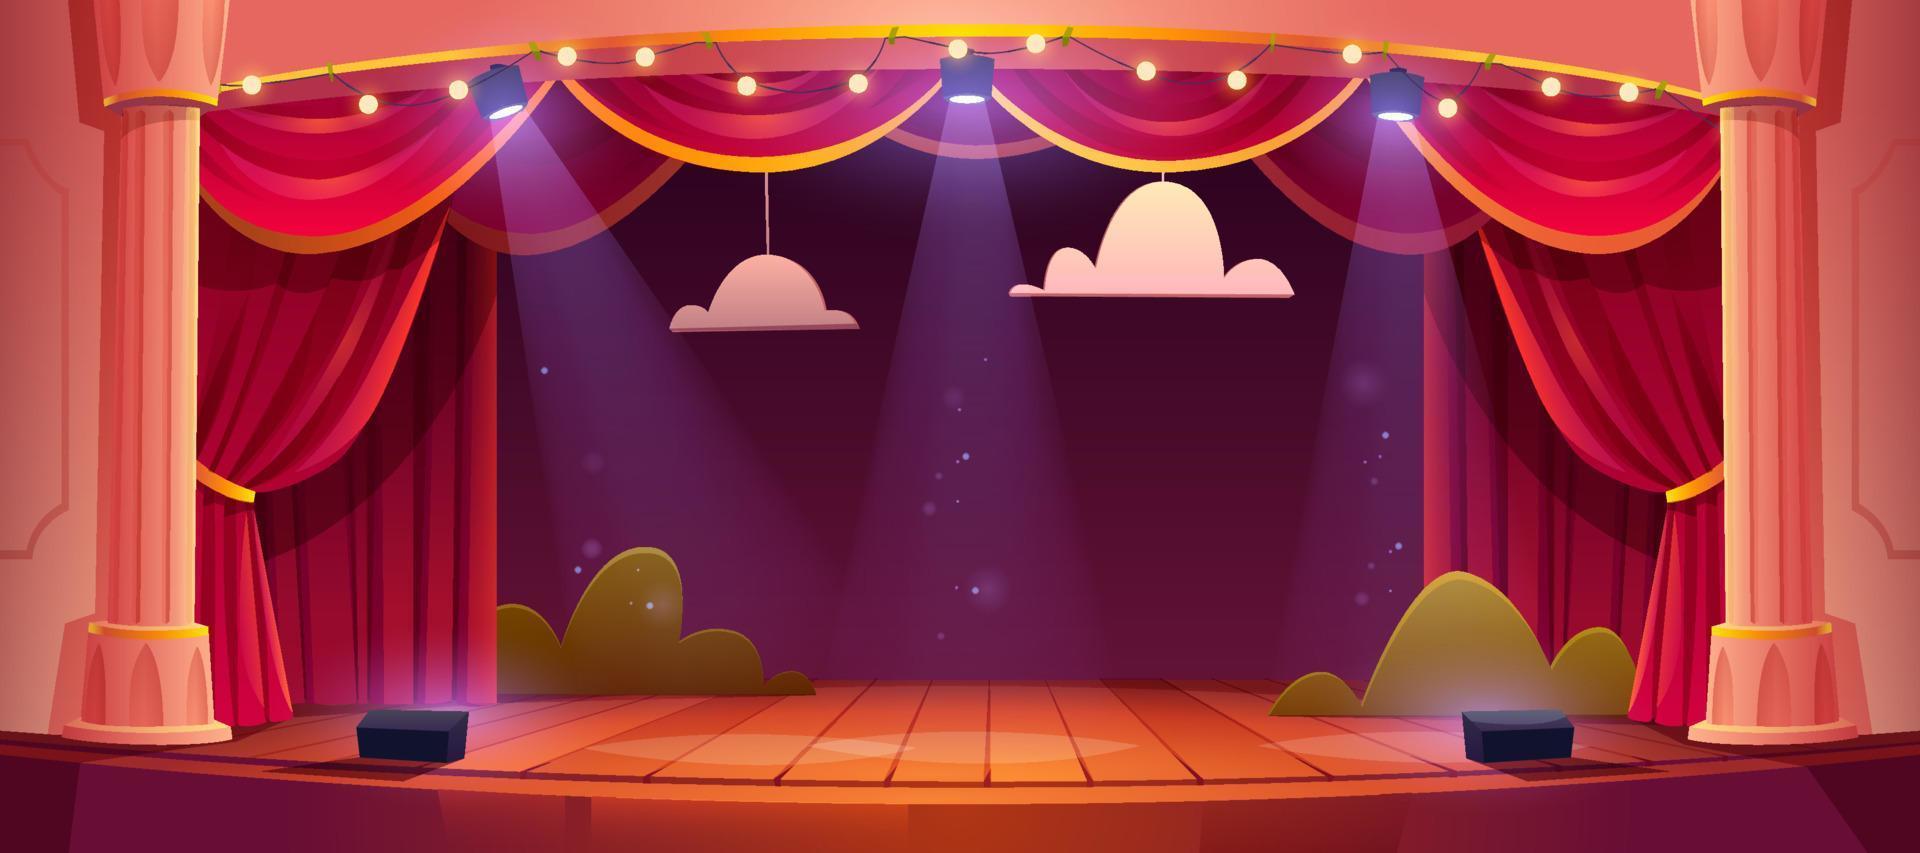 escenario de teatro de dibujos animados de vector con cortinas rojas